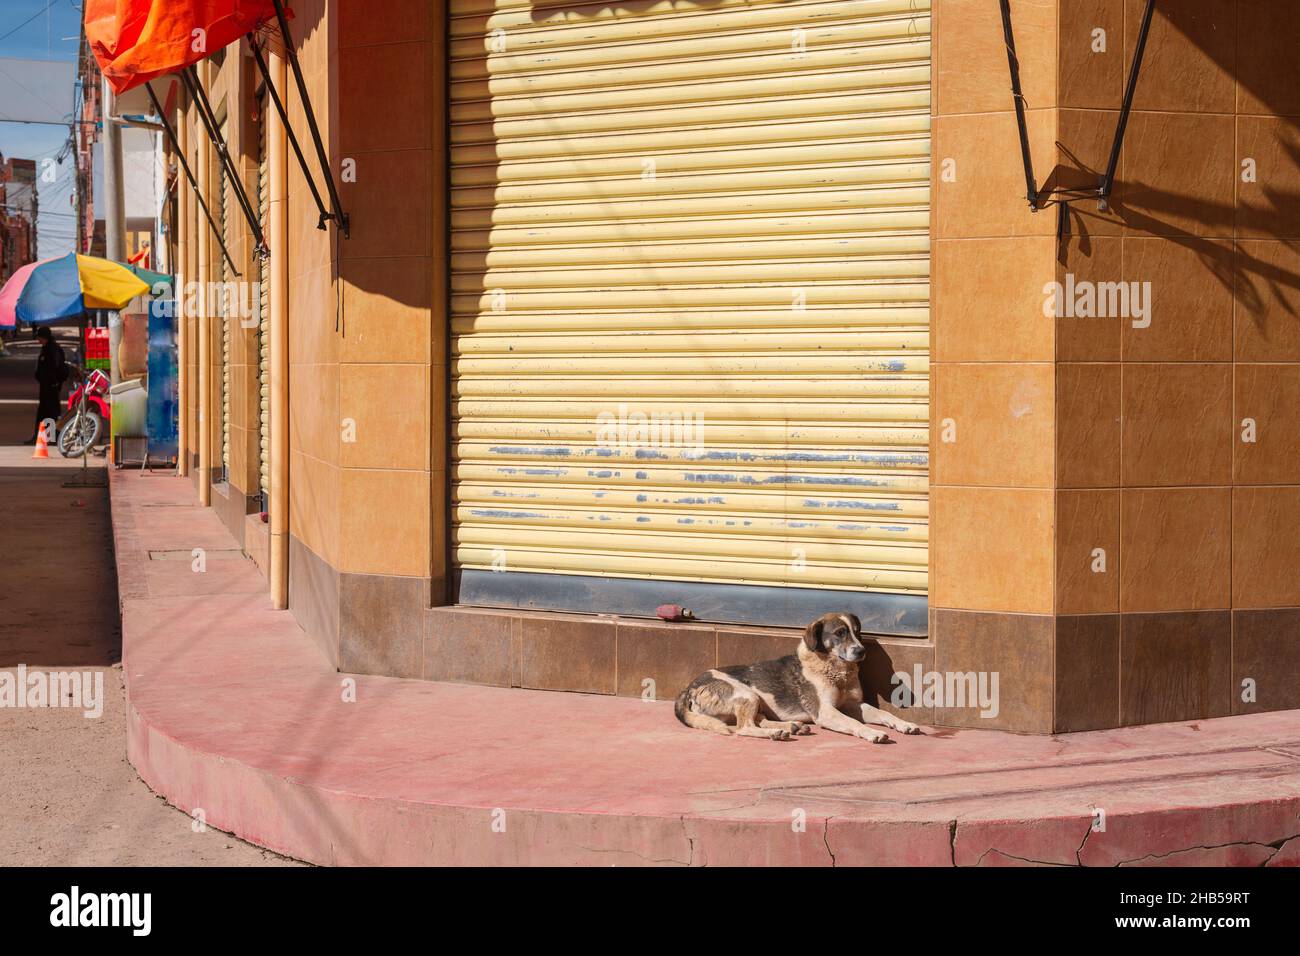 chien errant de shaggy reposant près de la porte fermée du magasin Banque D'Images